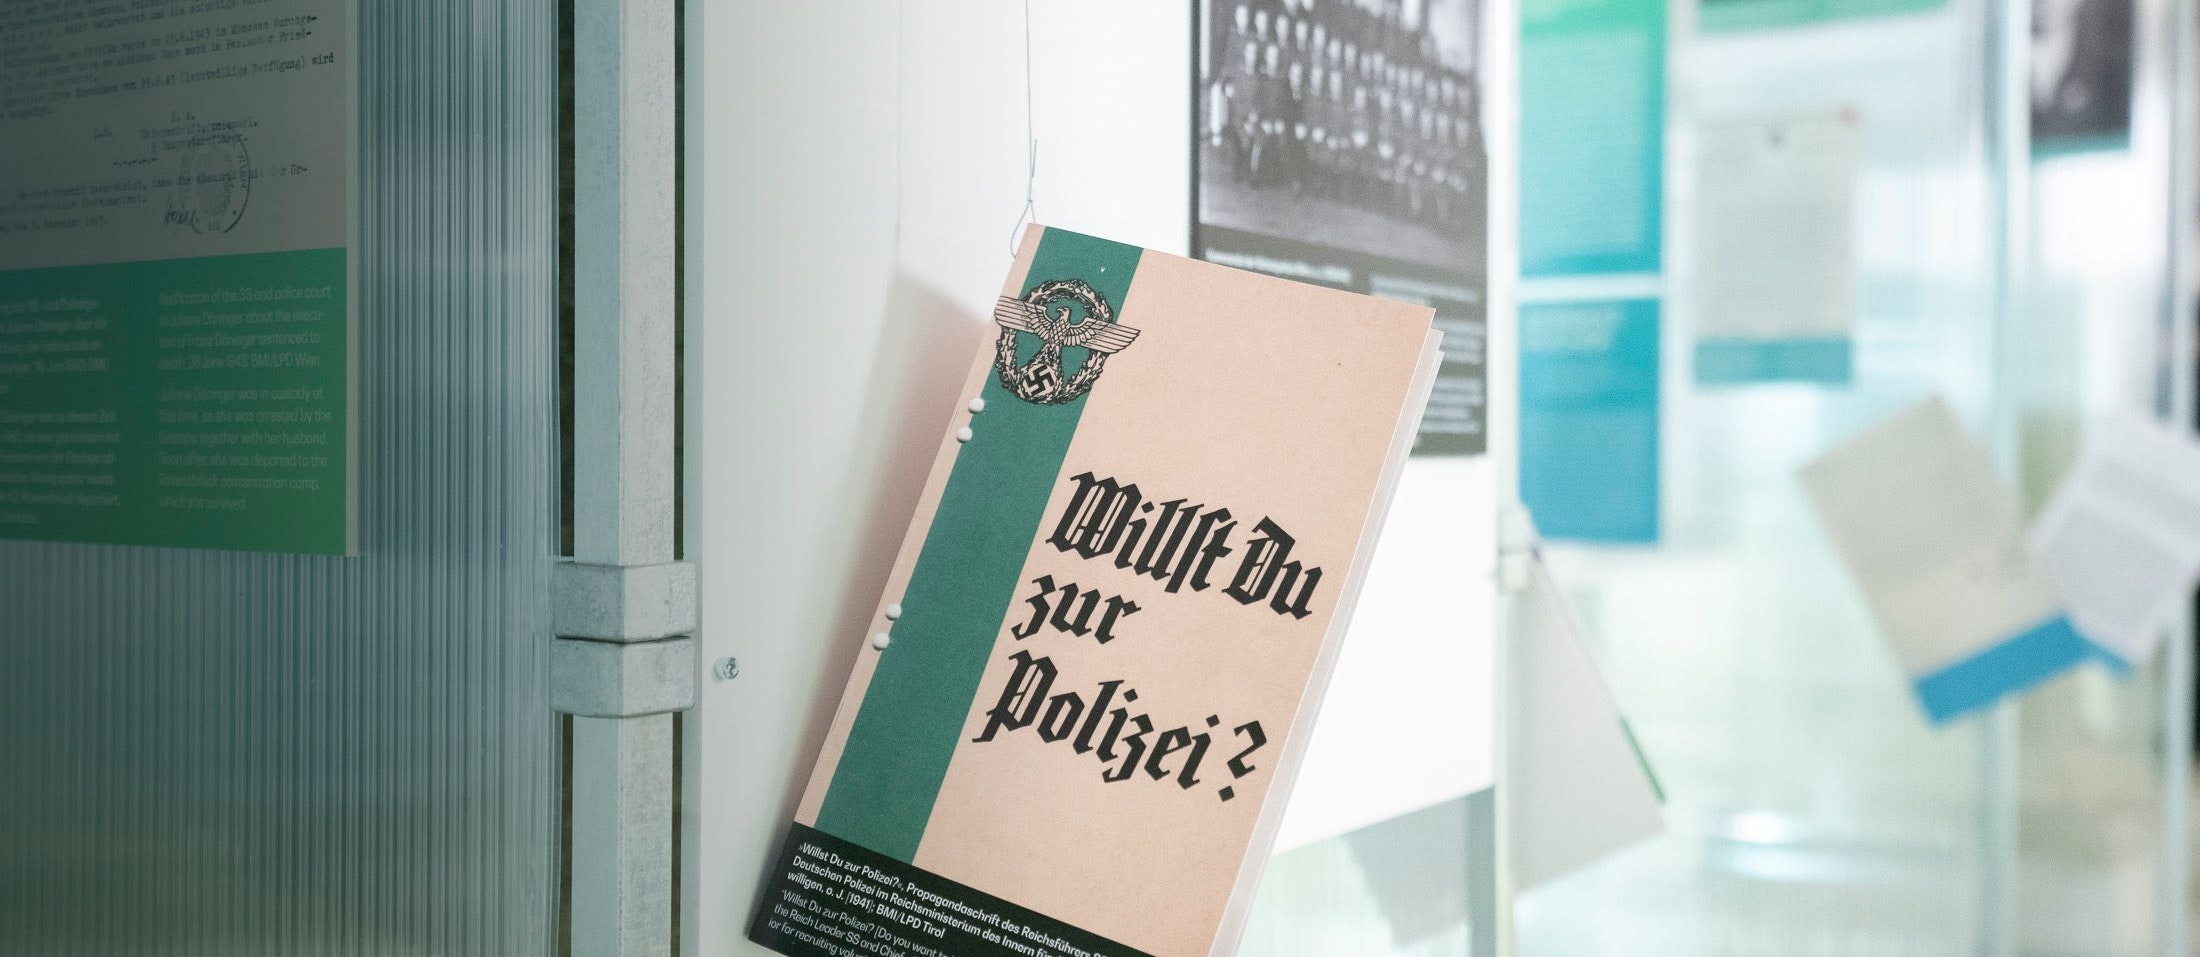 Die neue Ausstellung "Hitlers Exekutive" widmet sich im Innenministerium der Rolle der Polizei in der Nazizeit